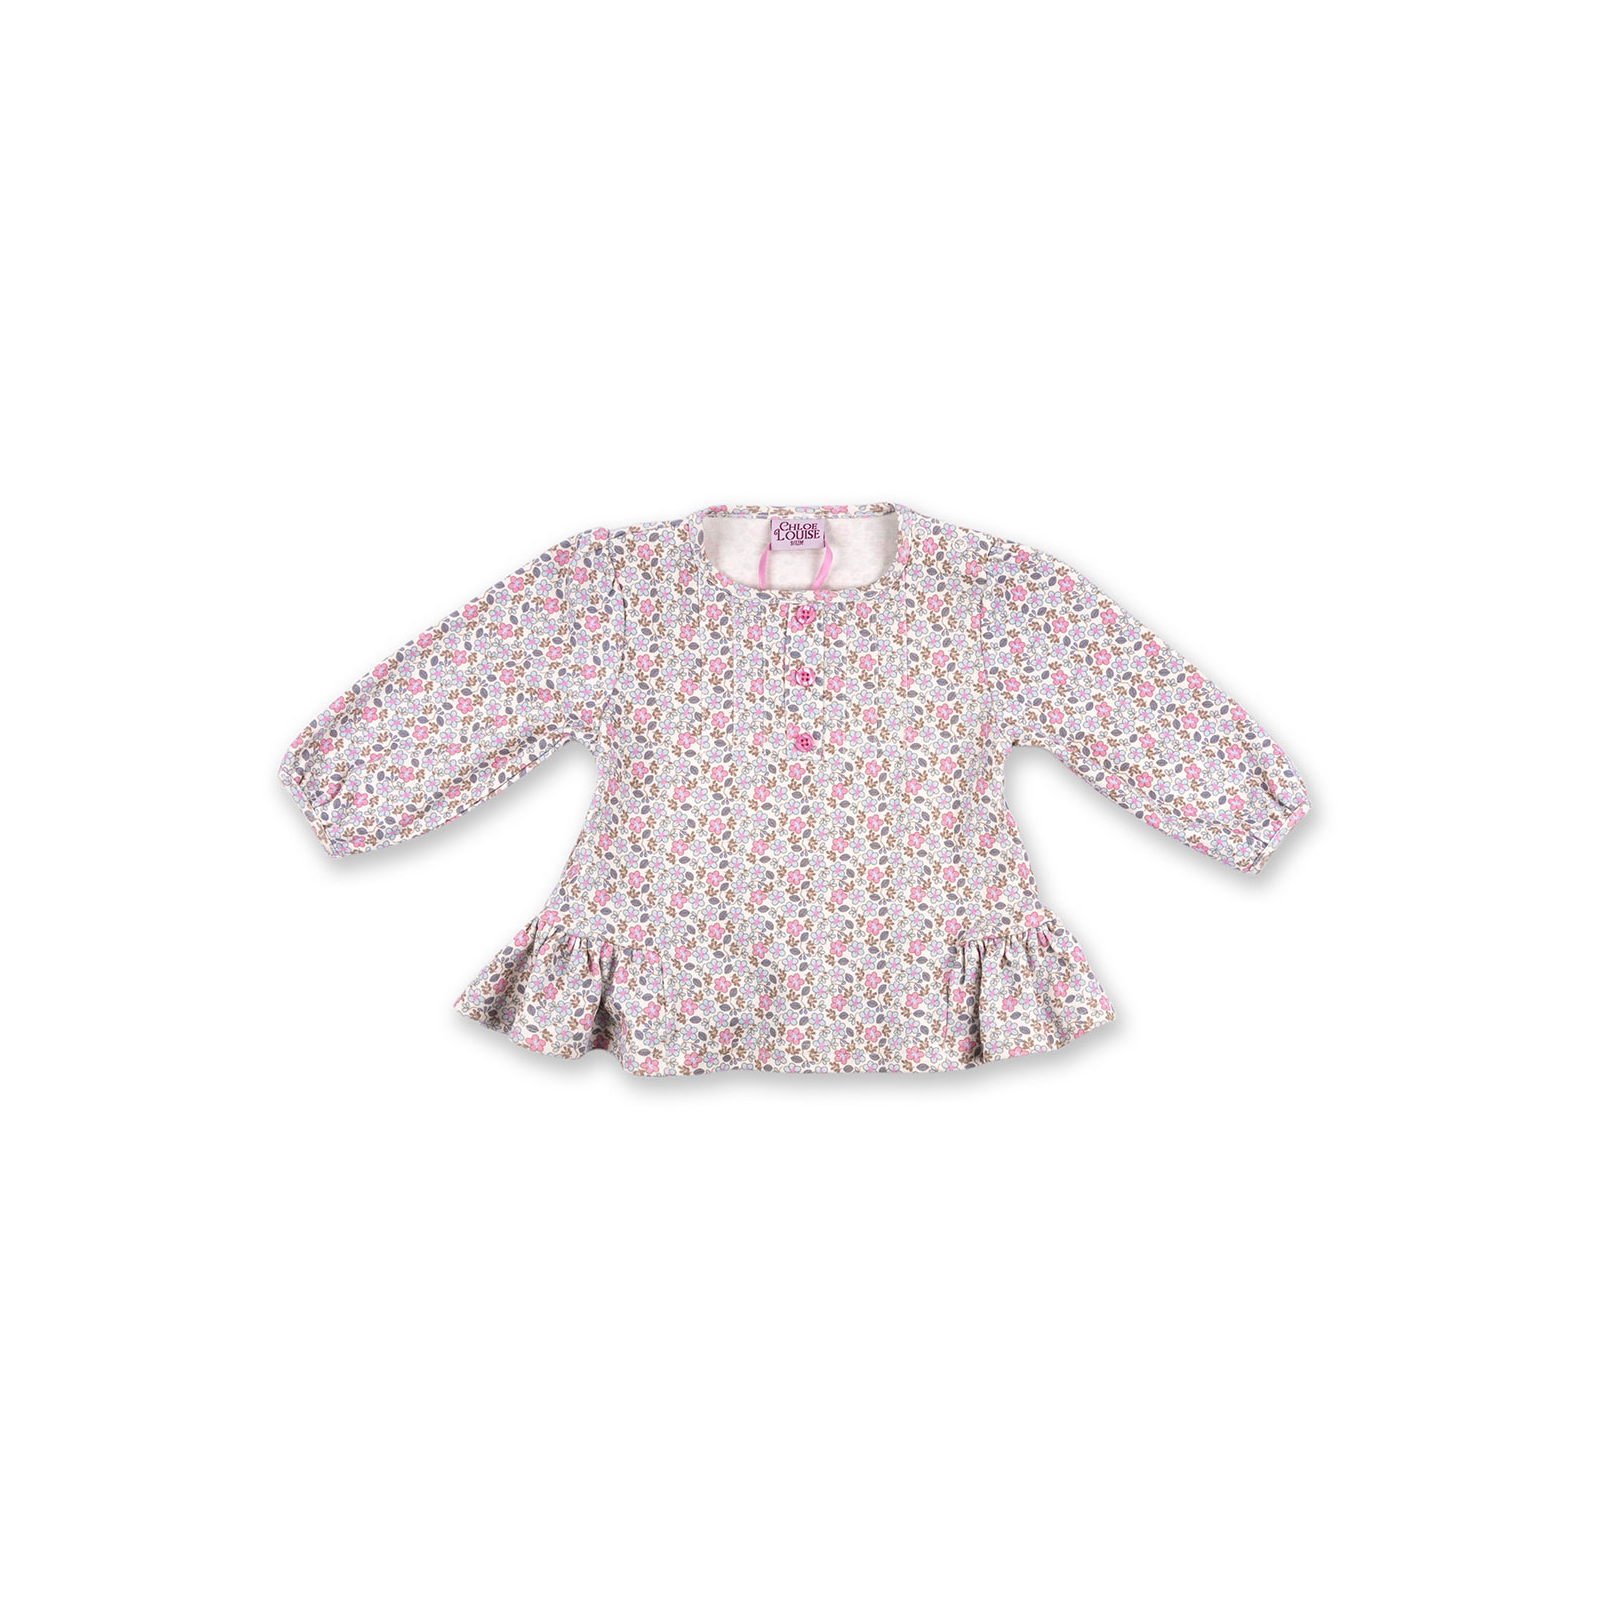 Набір дитячого одягу Luvena Fortuna для дівчаток: кофточка, штанці і хутряна жилетка (G8234.R.12-18) зображення 4